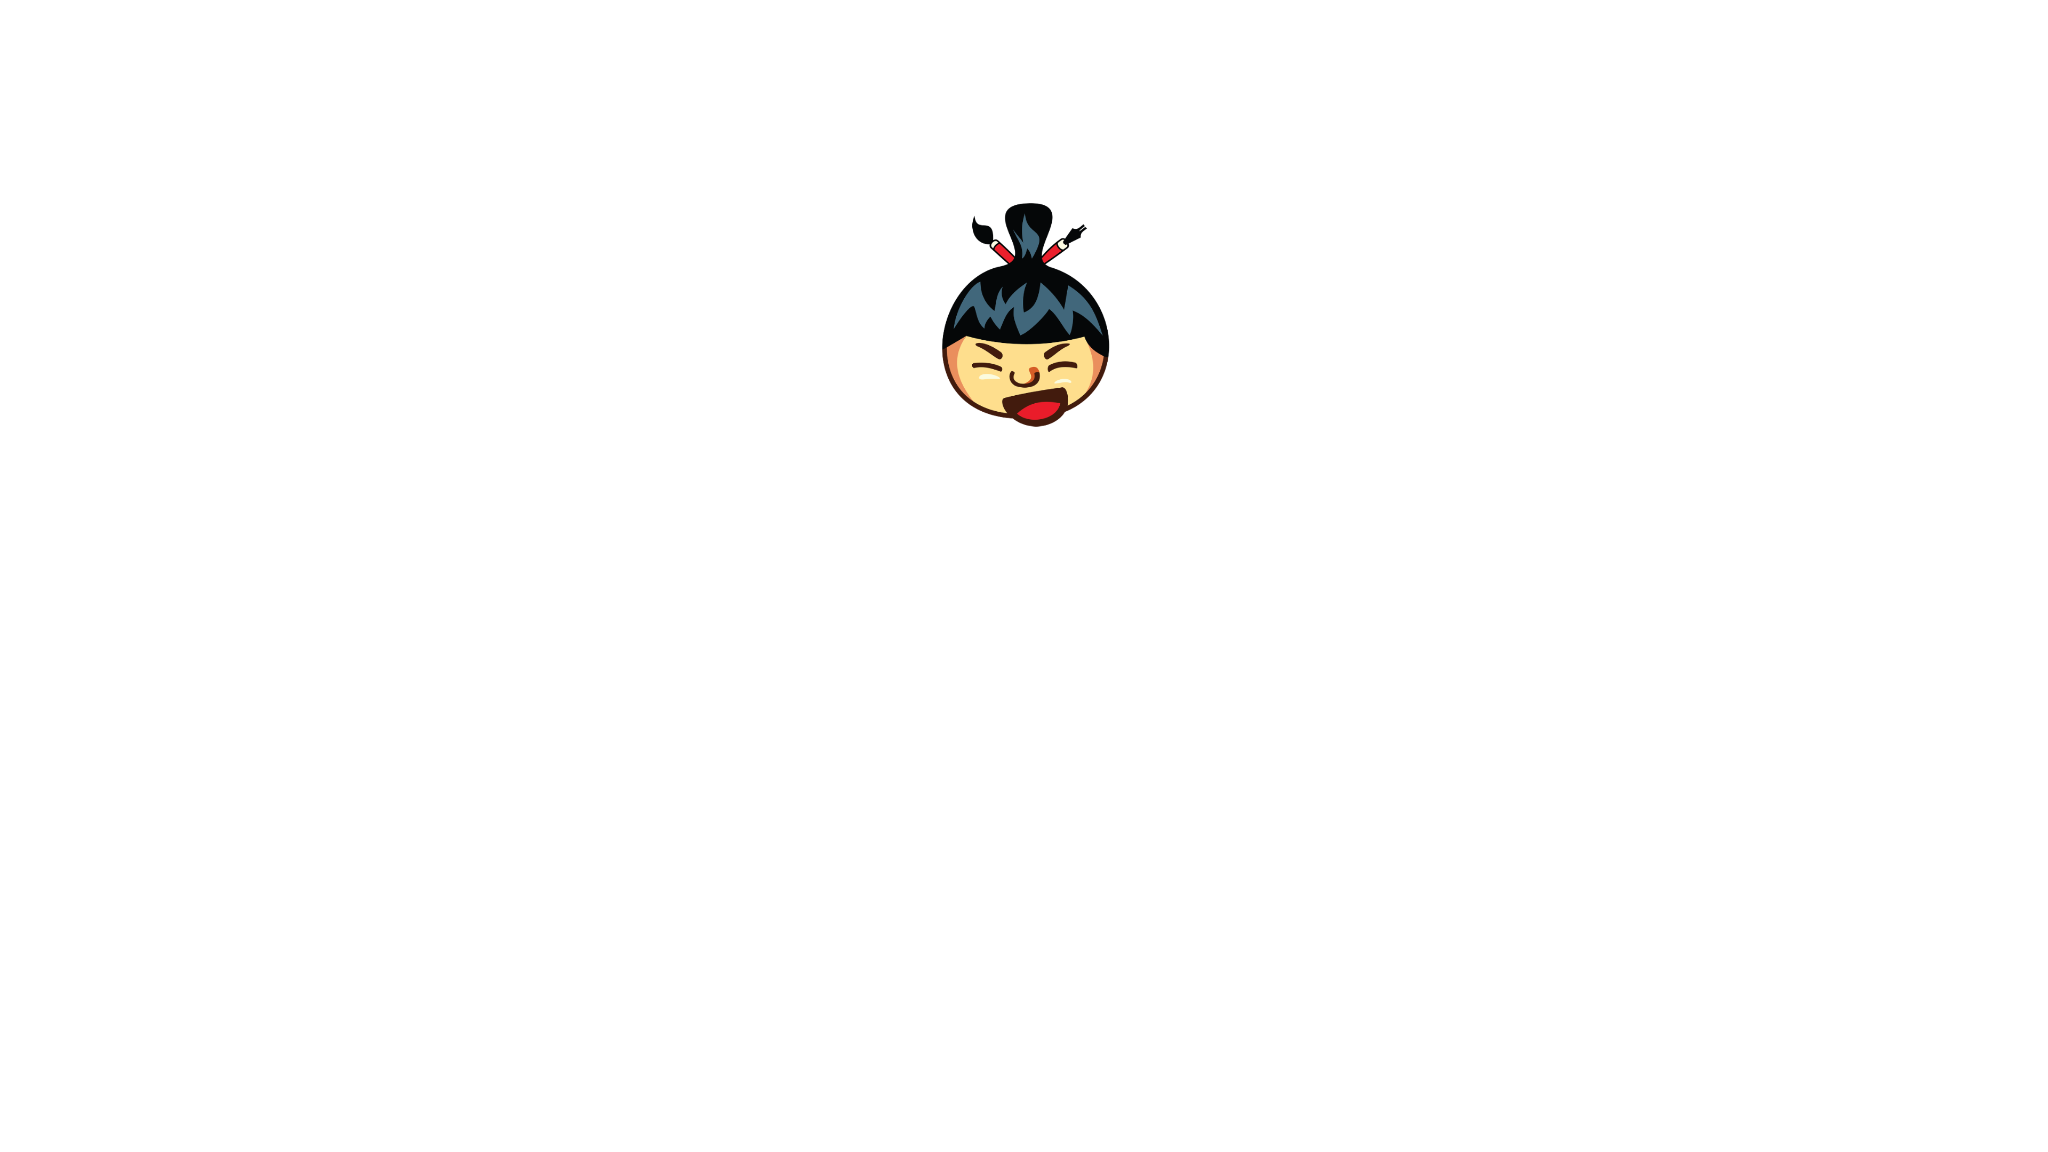 Sumo Video Intro - Lauri Koutaniemiによって作成されましたpaint付き